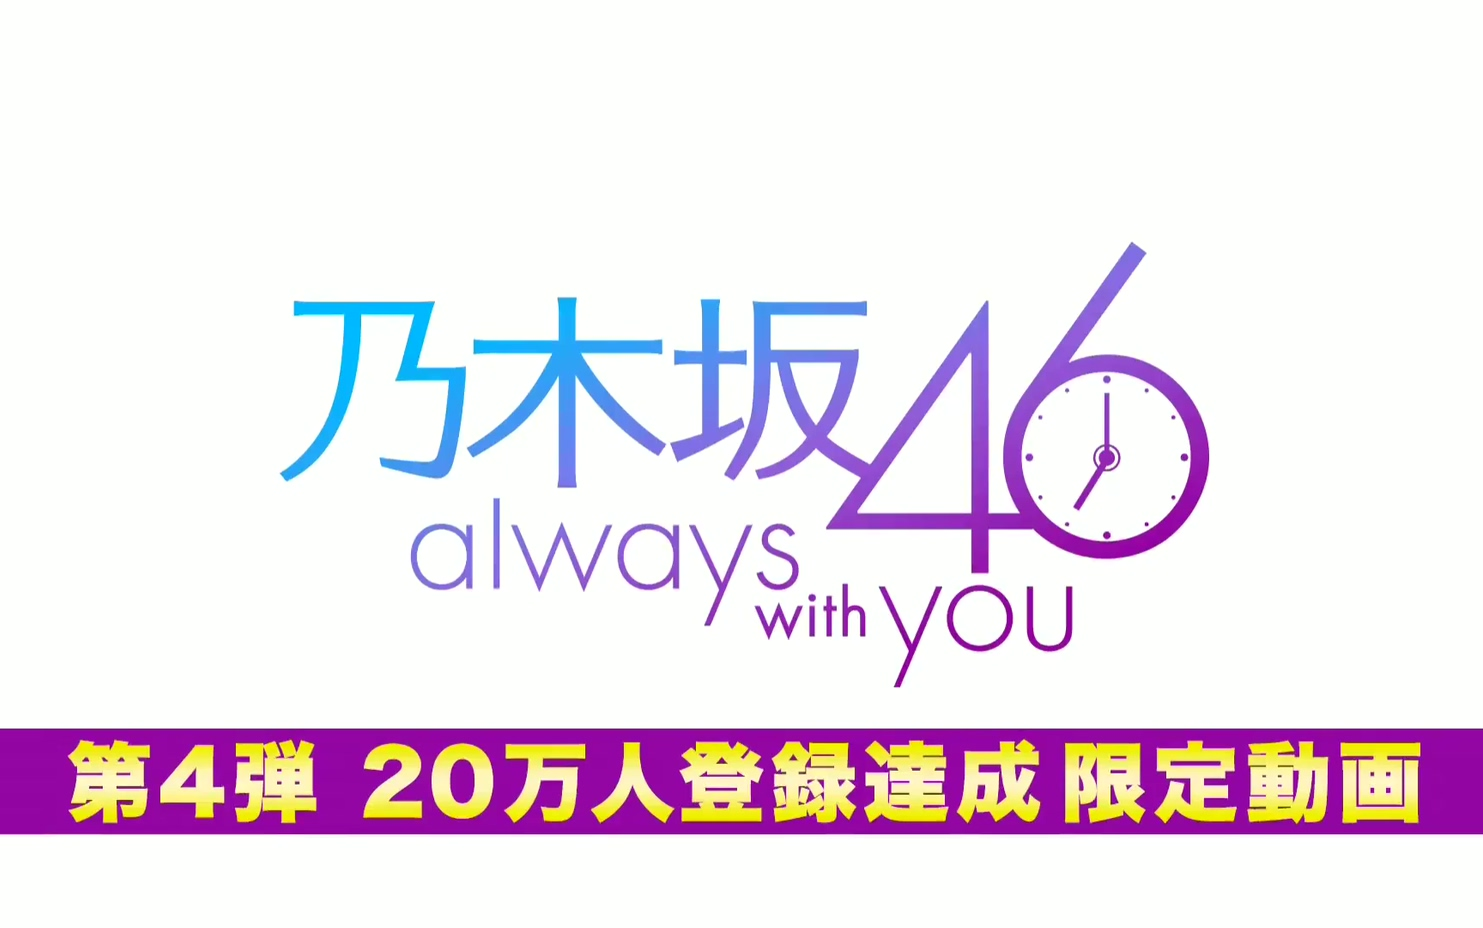 乃木坂46 logo图片